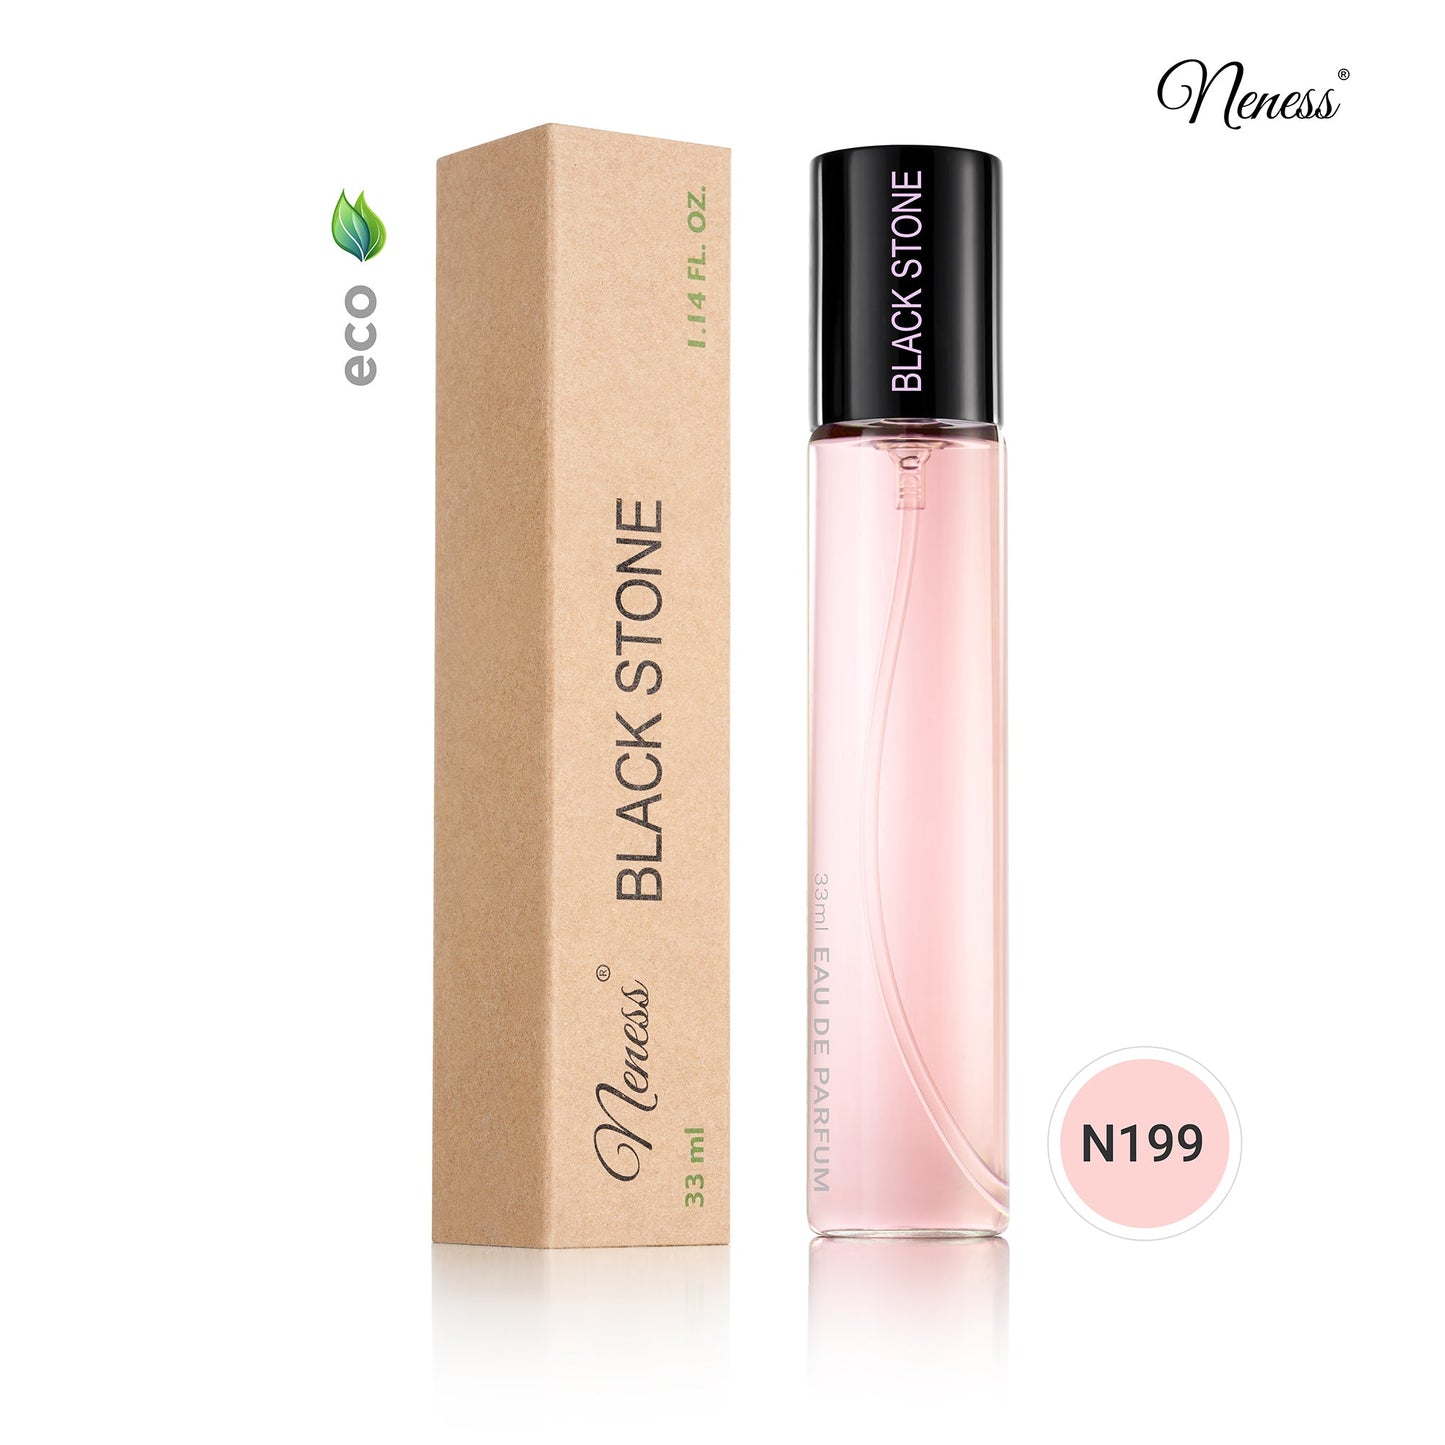 N199. Neness Black Stone - 33 ml - Parfum Pour Femme